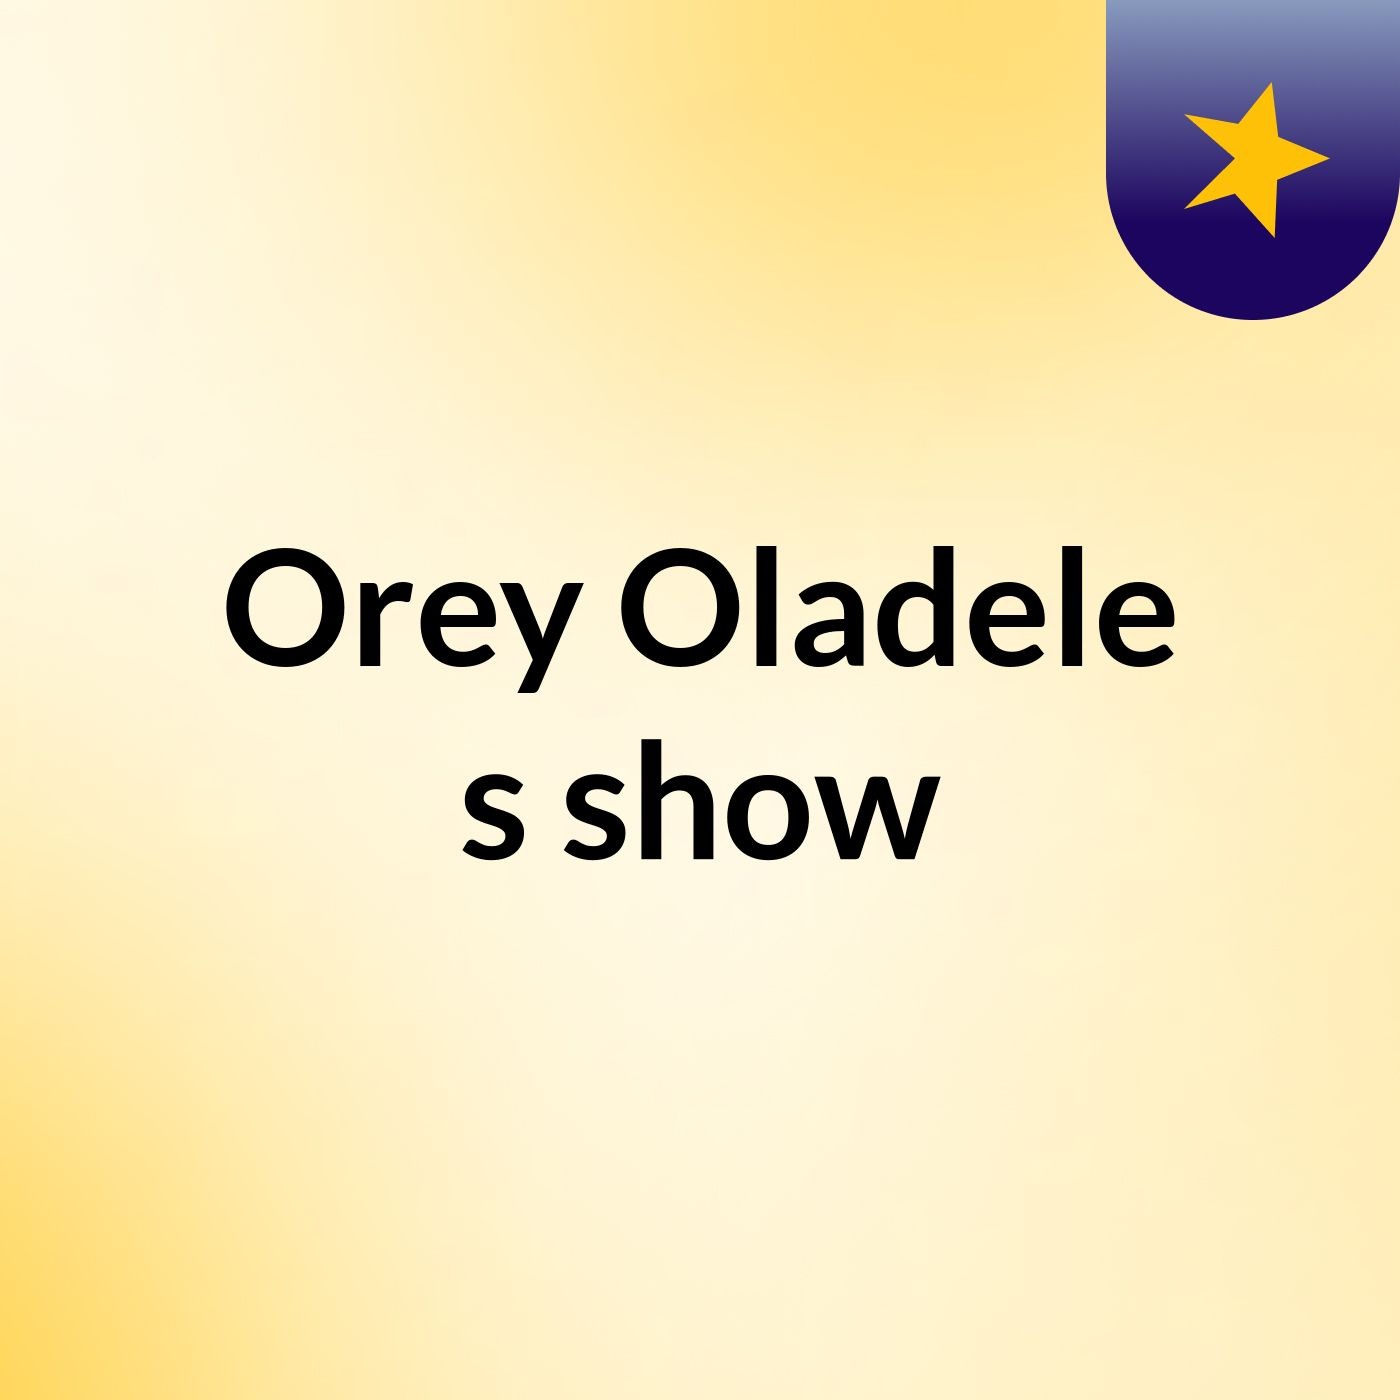 Orey Oladele's show